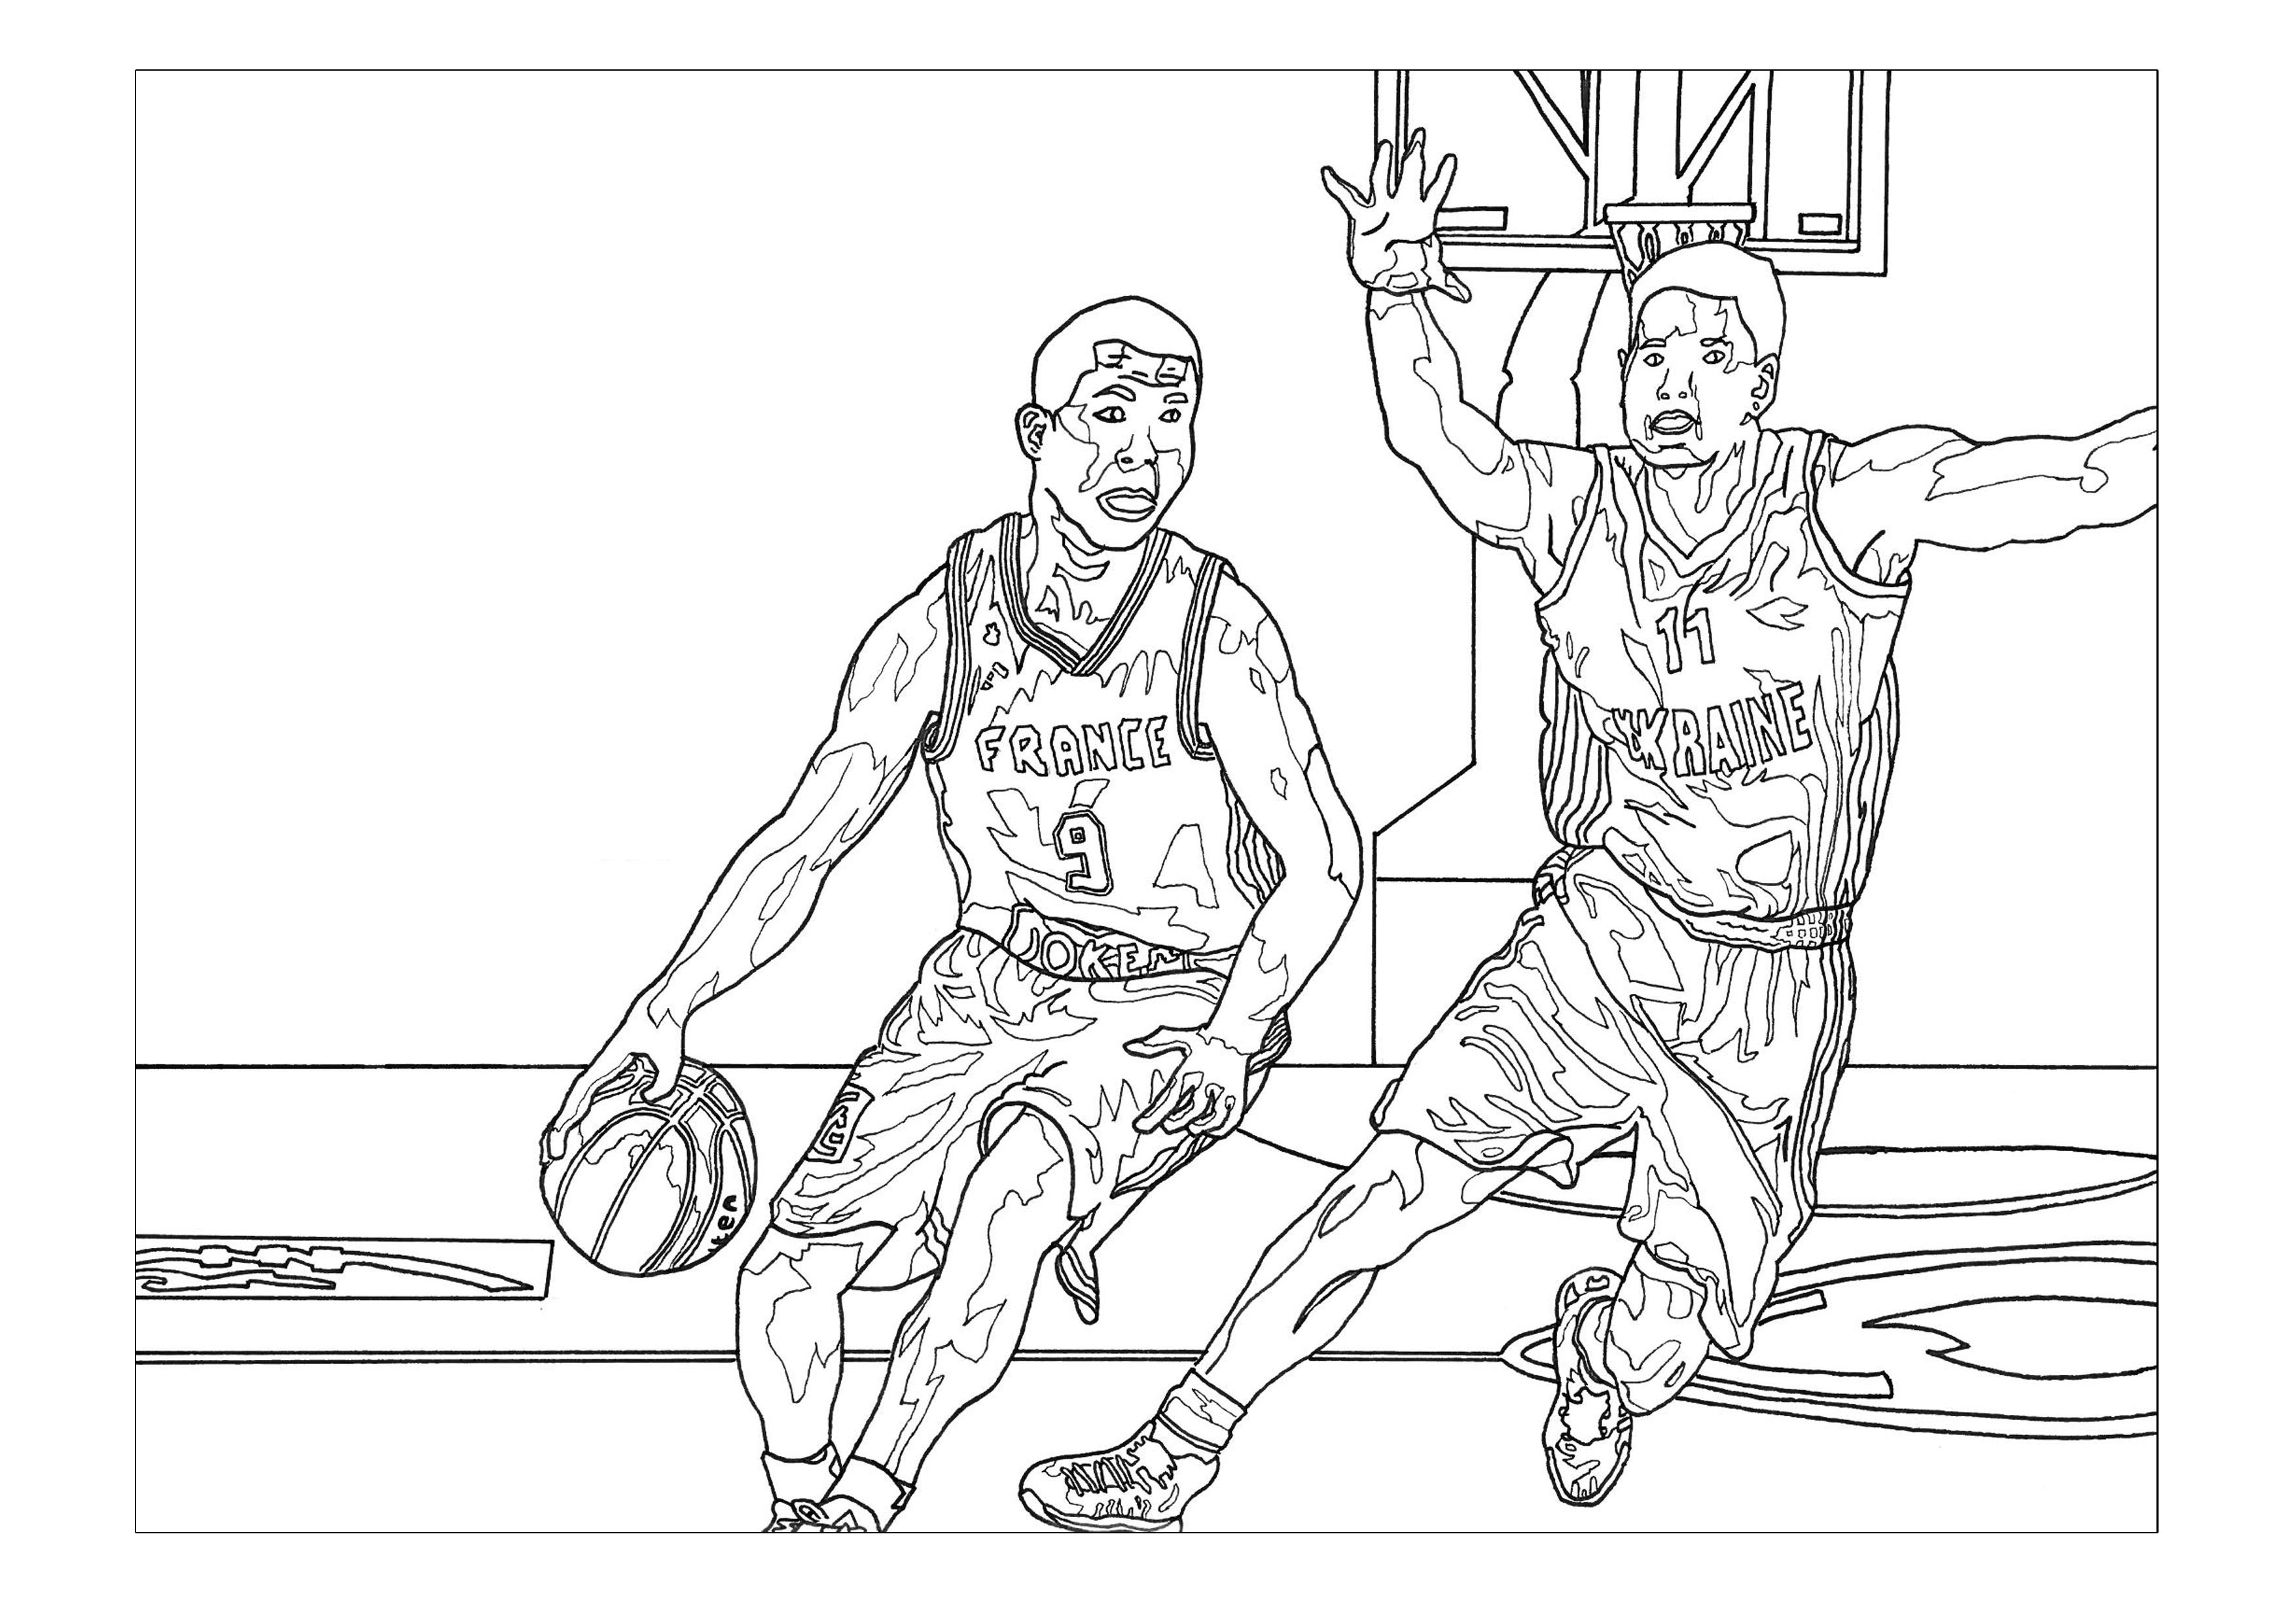 Colorear sobre el tema del baloncesto